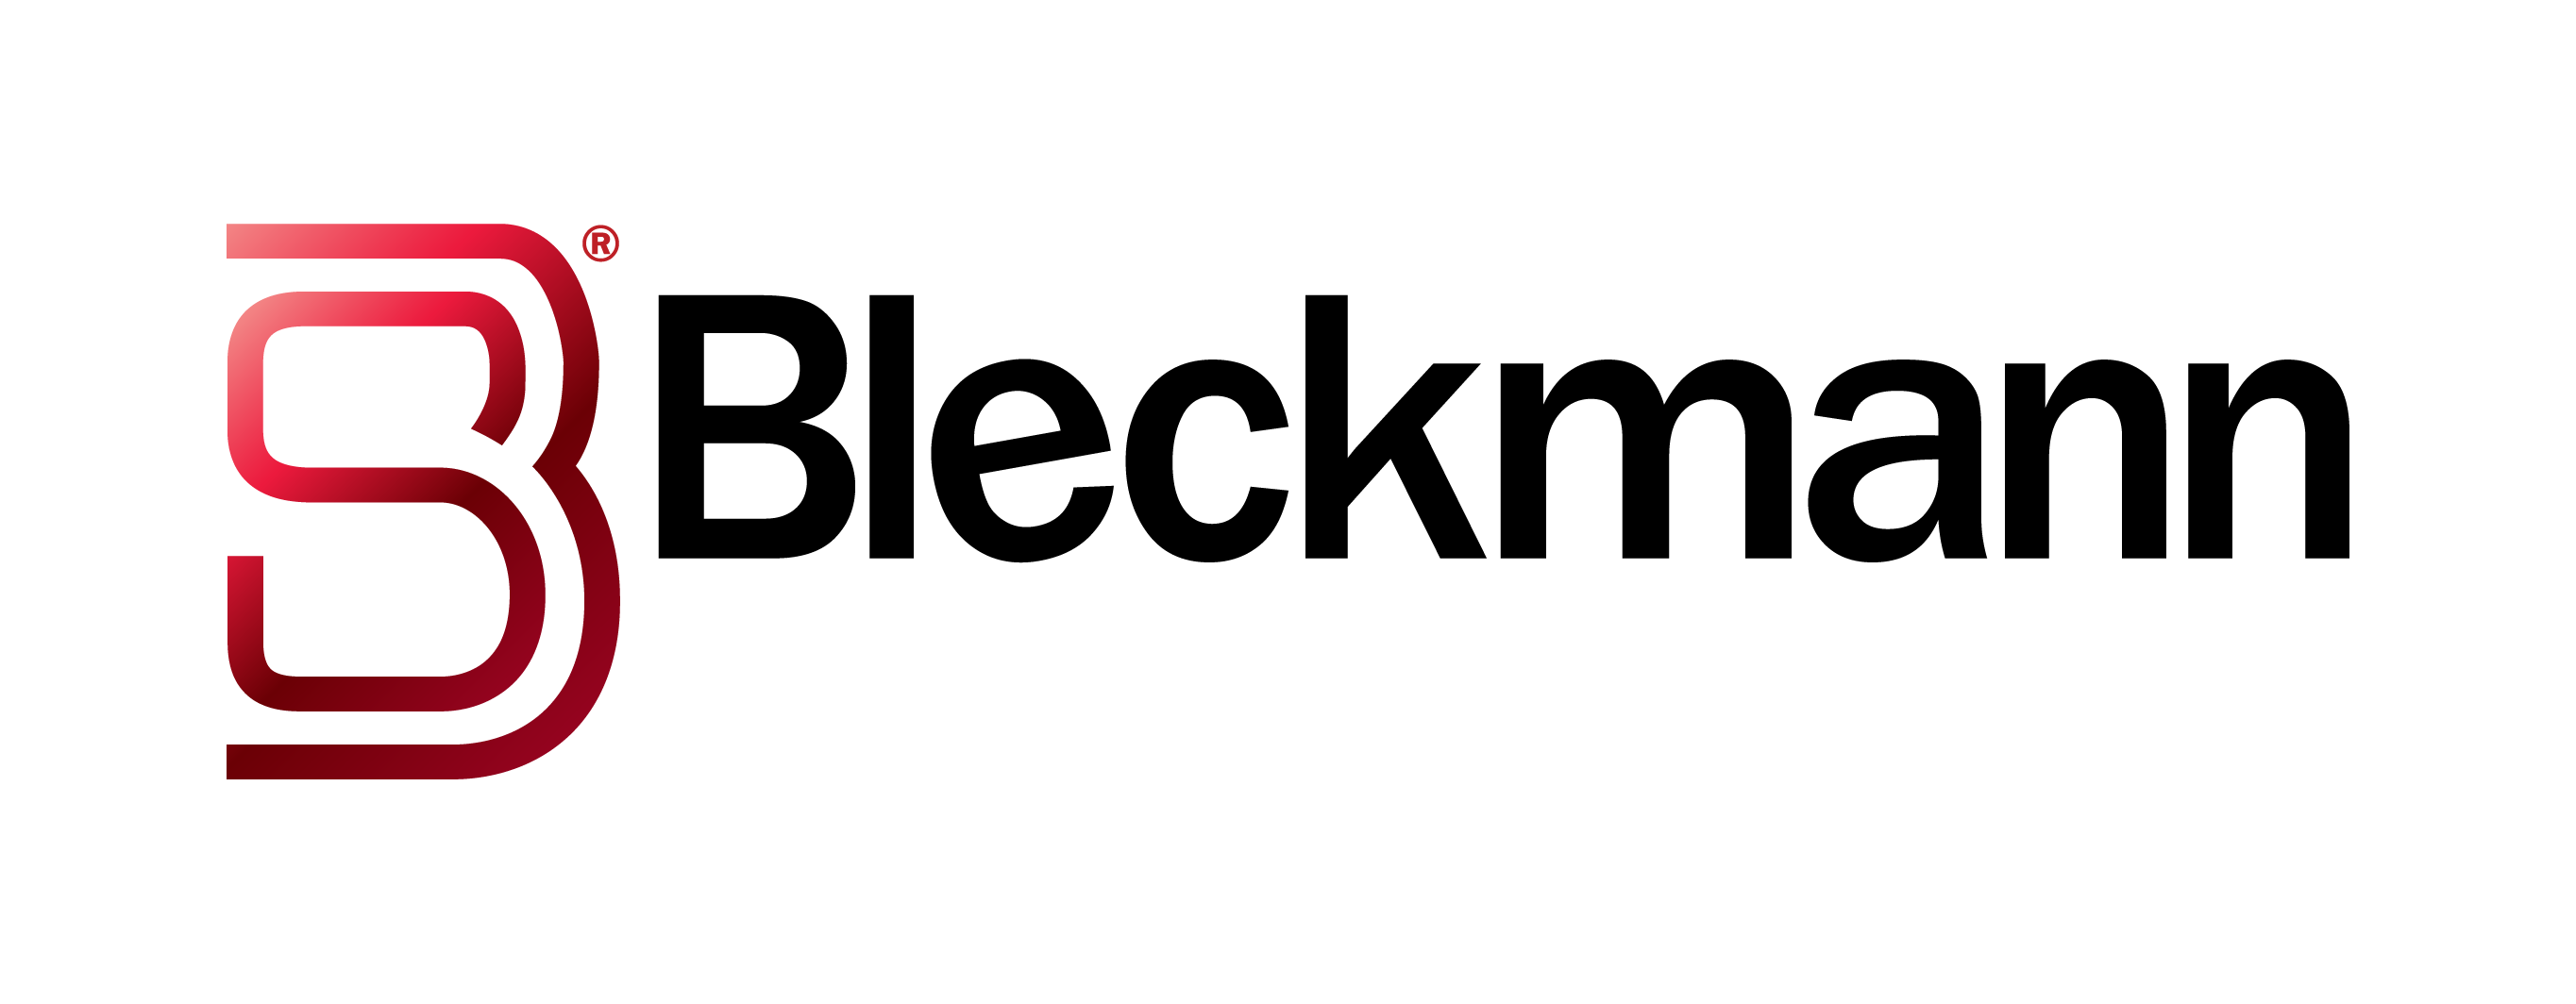 bleckmann logo